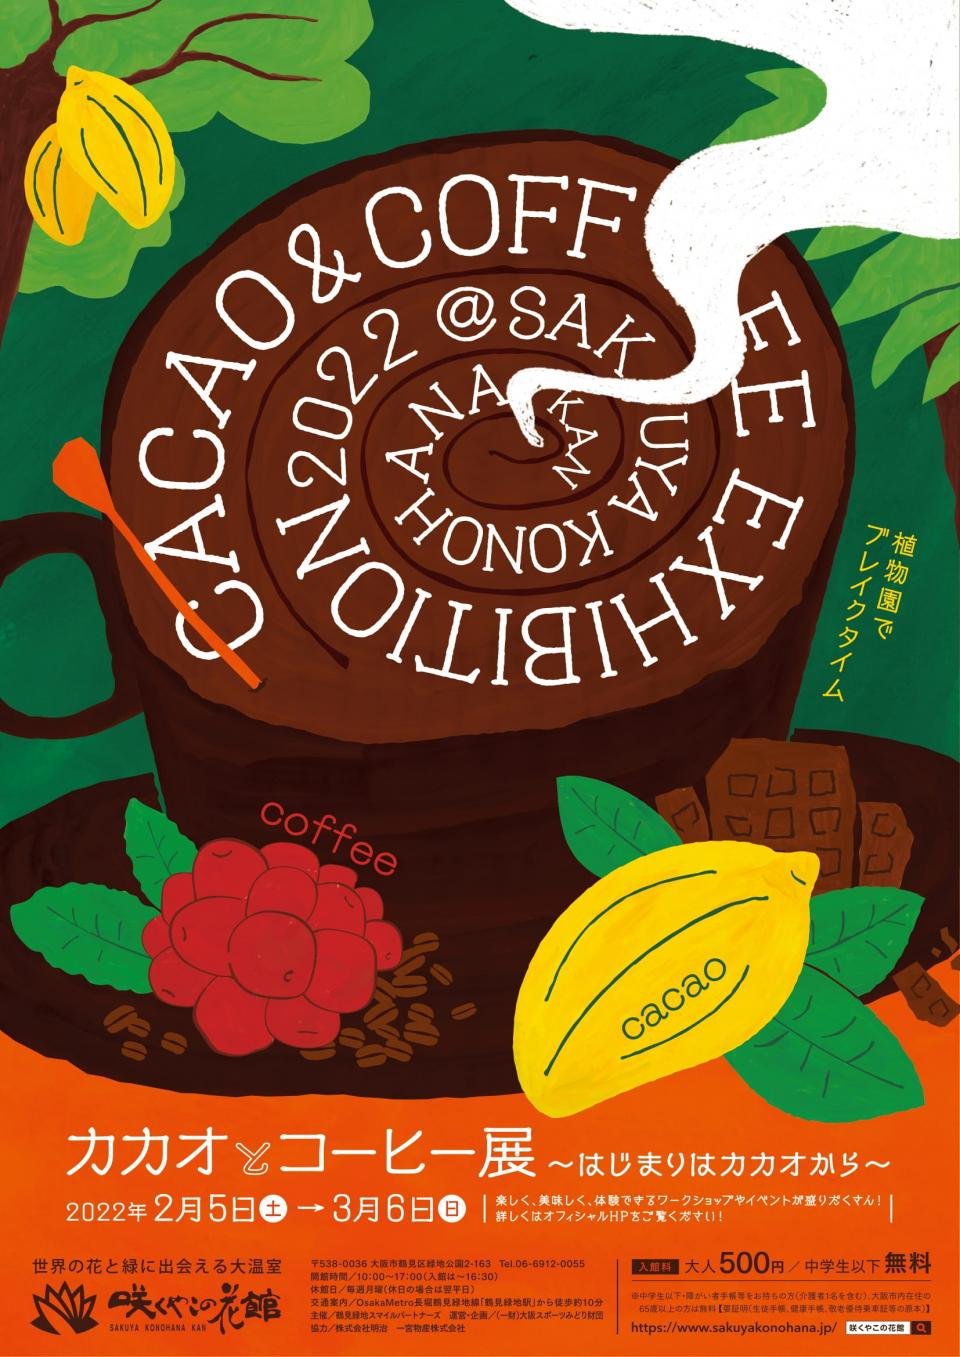 咲くやこの花館さん『カカオとコーヒー展』にてコーヒーノキとコケを使った鉢植え作りを開催！